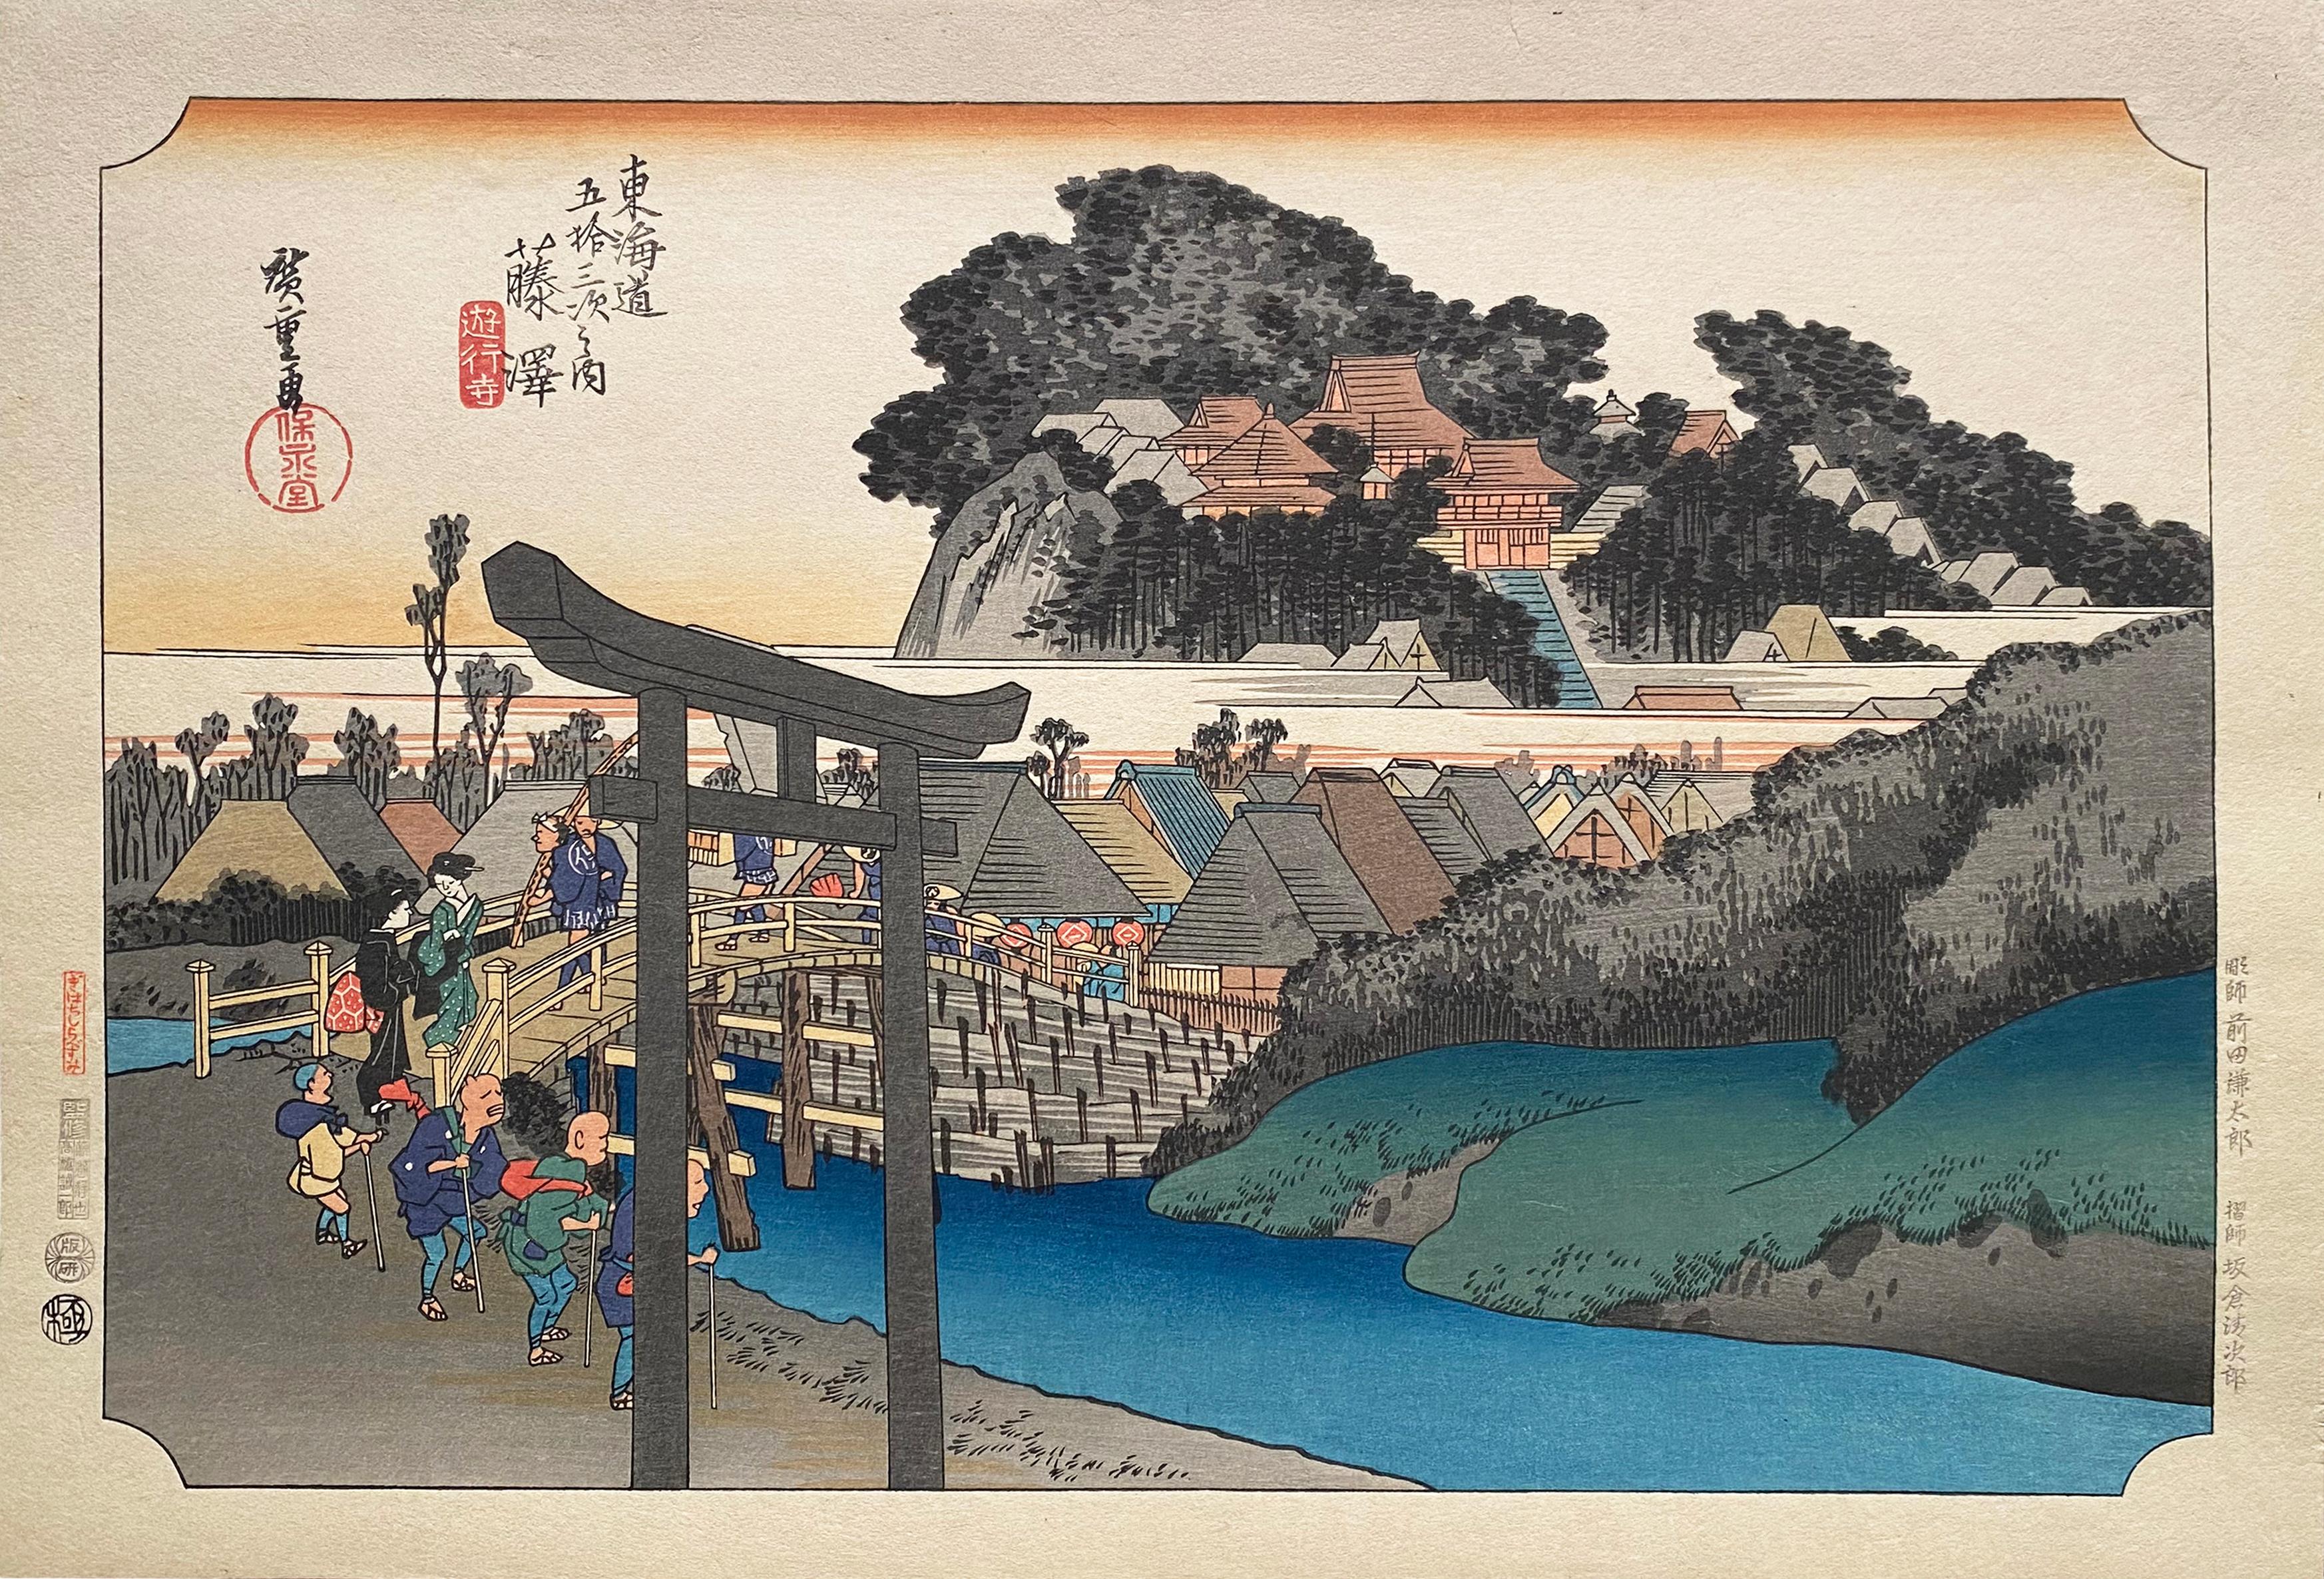 Utagawa Hiroshige (Ando Hiroshige) Landscape Print - 'View of Fujisawa', After Utagawa Hiroshige 歌川廣重, Ukiyo-e Woodblock, Tokaido